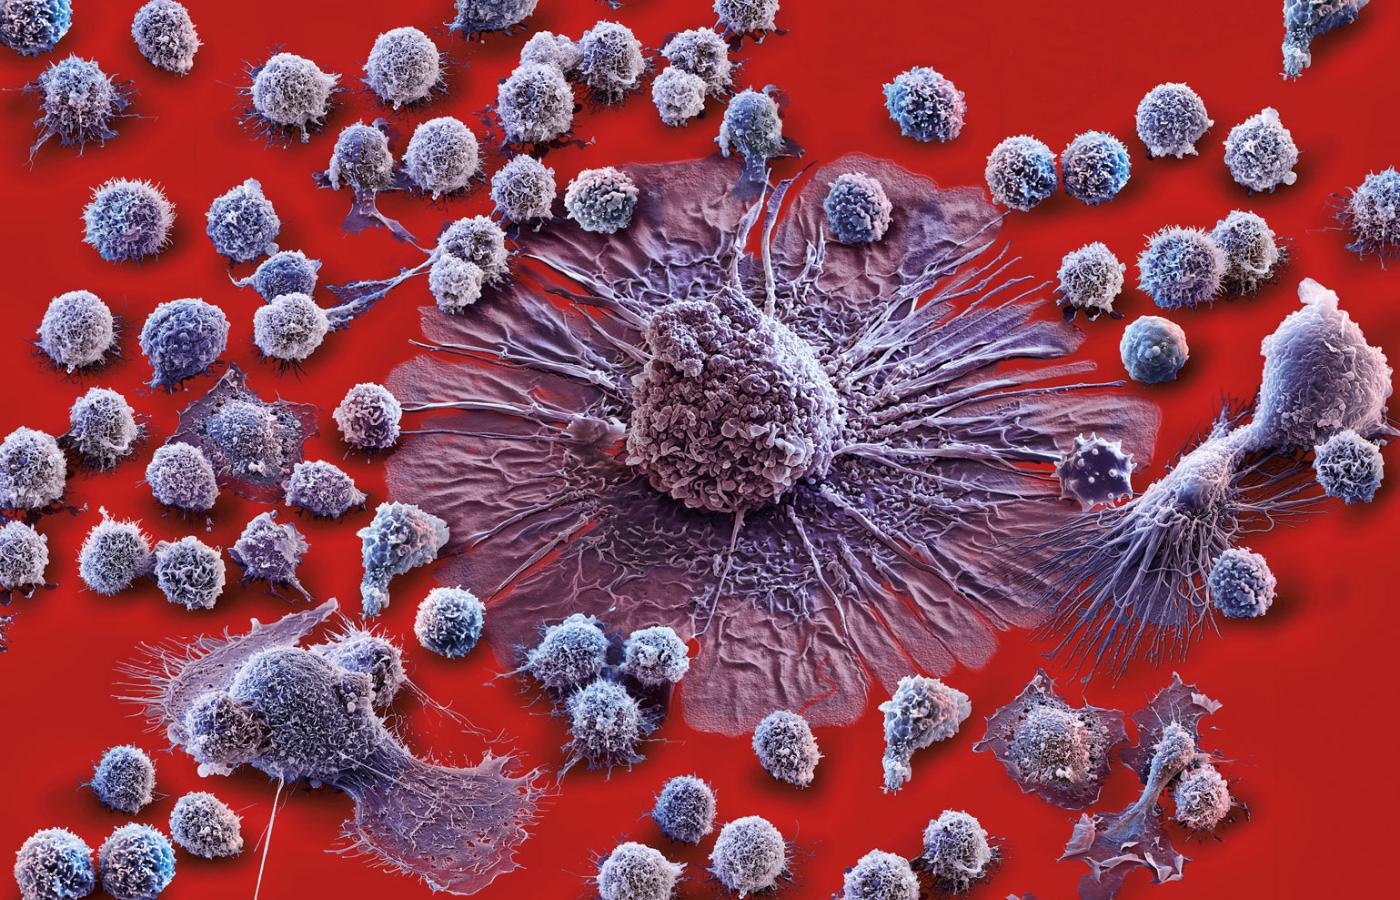 Ilustracja burzy cytokinowej, czyli ostrej reakcji immunologicznej, w wyniku której komórki obronne organizmu atakują również sam organizm. Na fot.: mniejsze komórki to różnego rodzaju leukocyty, a większe – makrofagi.